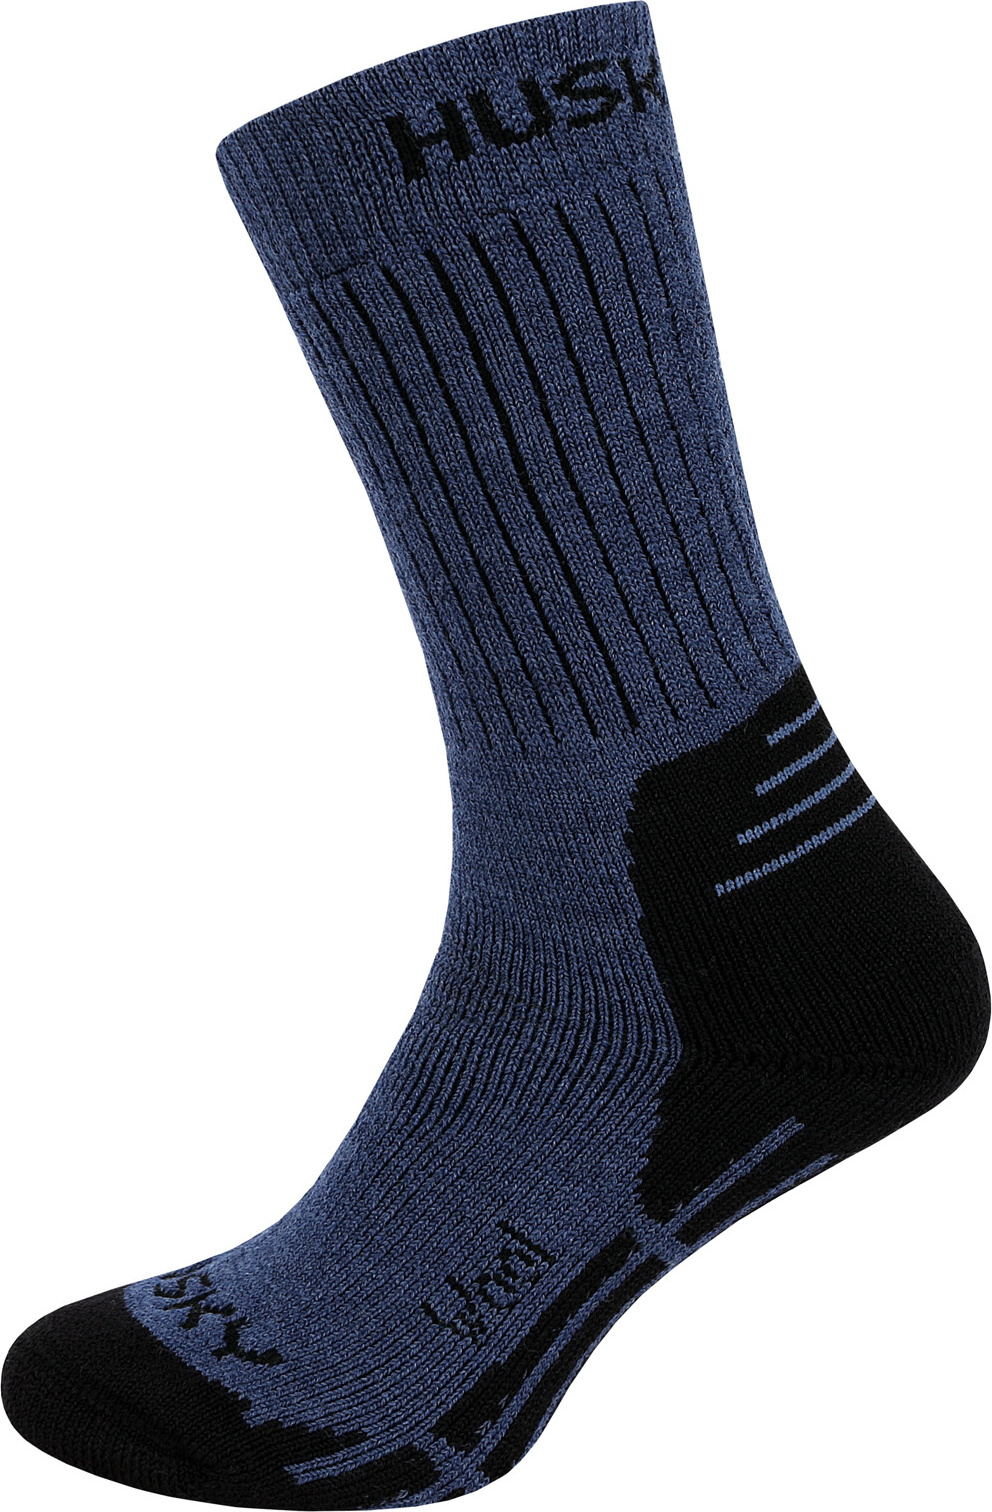 Ponožky HUSKY All Wool modrá + Sleva 5% - zadej v košíku kód: SLEVA5 Velikost: L (41-44)